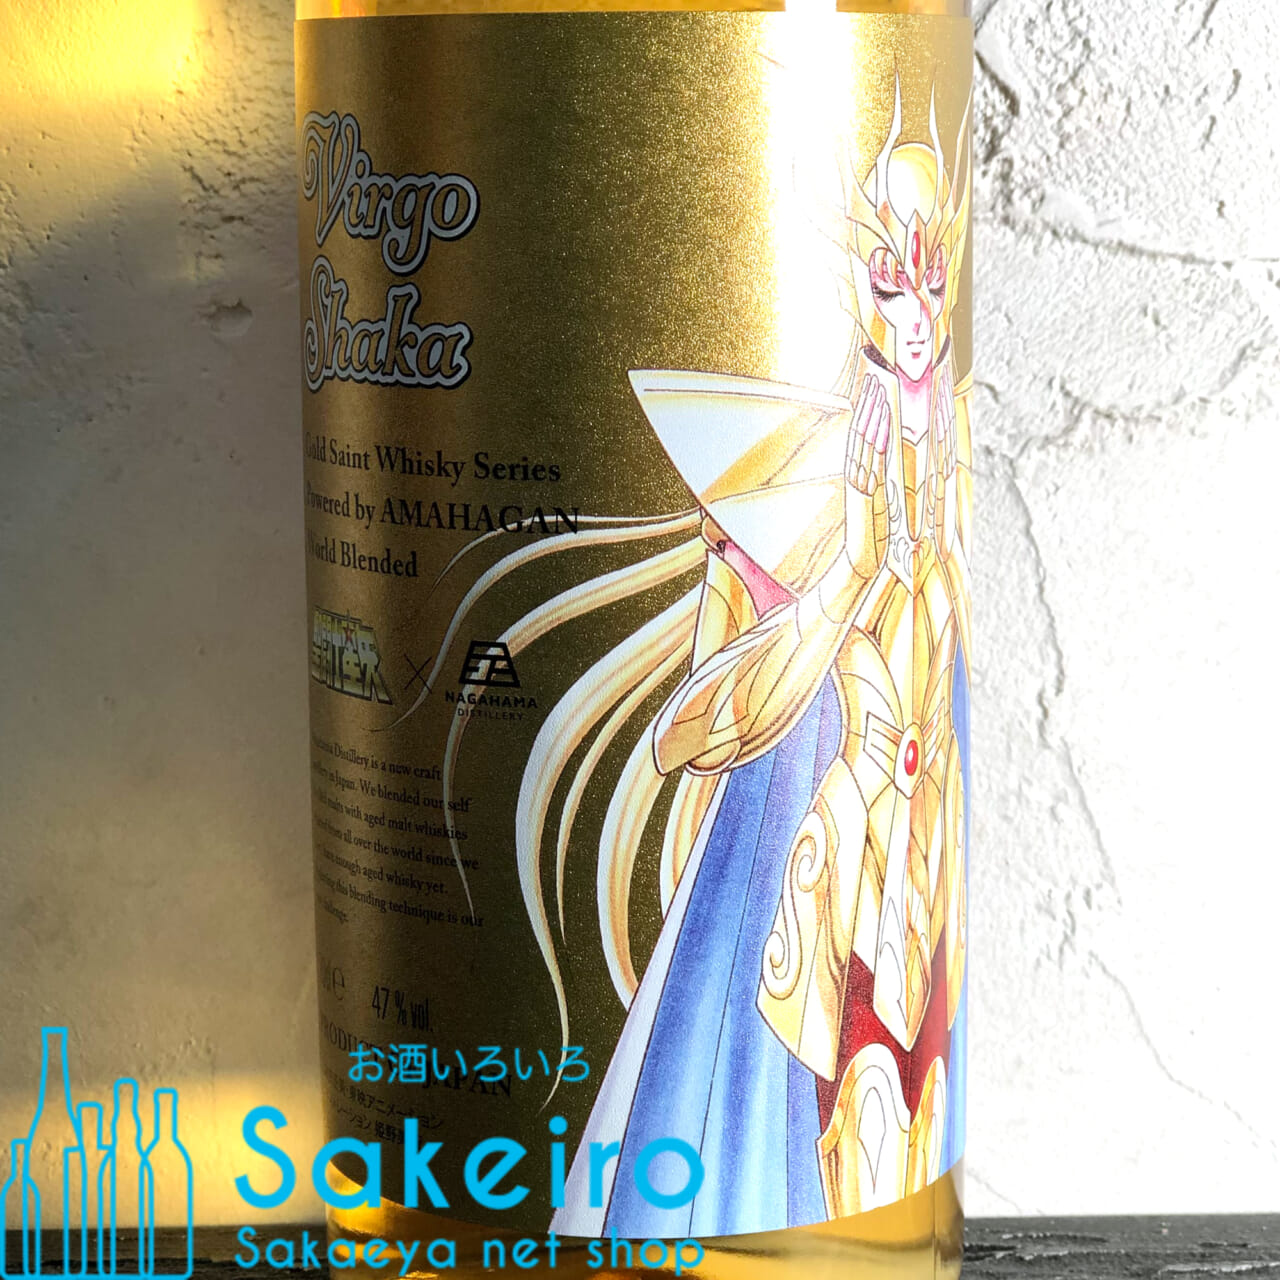 長濱蒸溜所 聖闘士星矢 ゴールドセイント ウイスキーシリーズ Powered by AMAHAGAN 「バルゴ シャカ」 47% 700ml